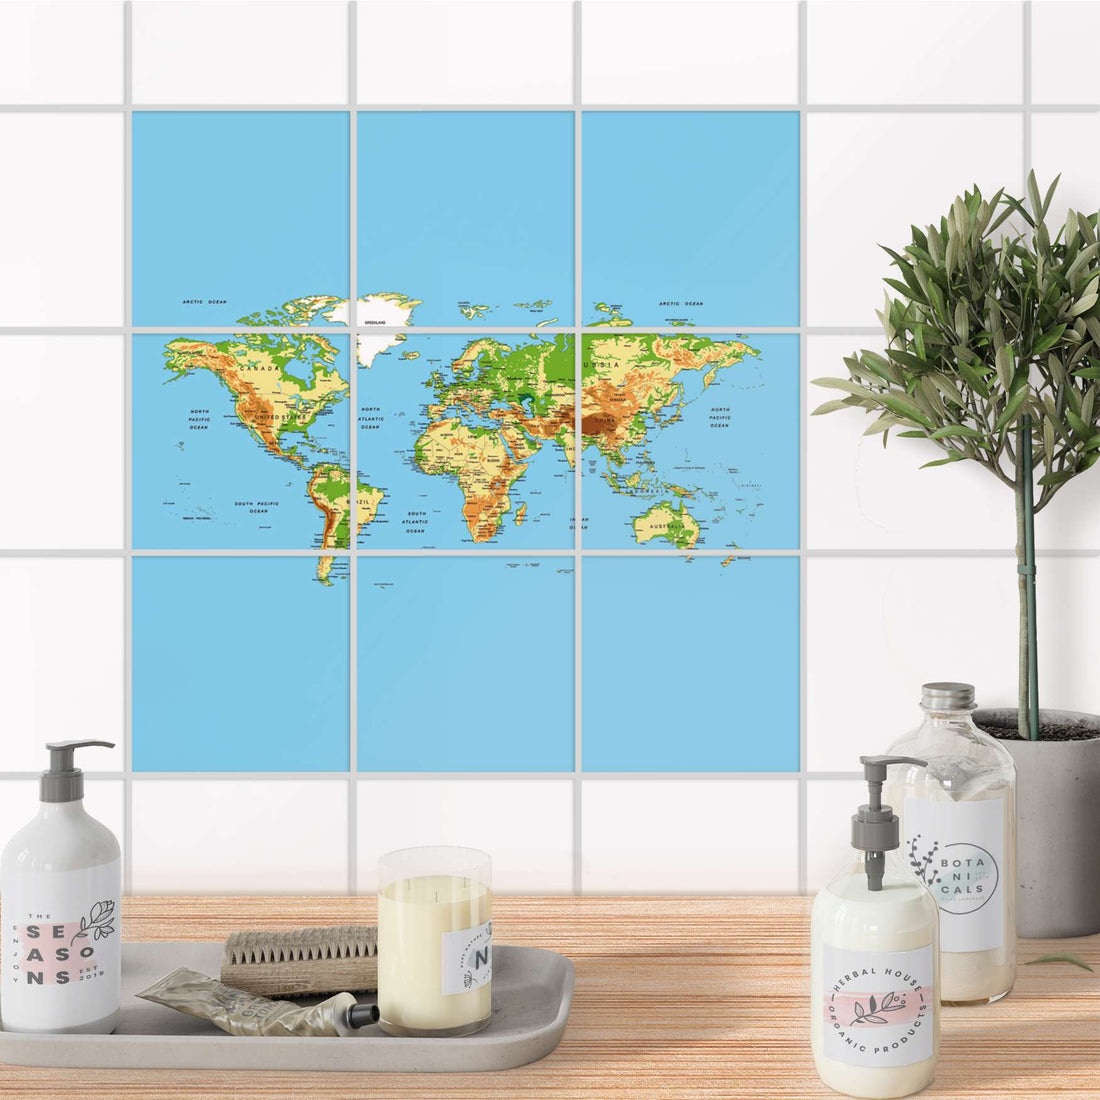 Klebefliesen Bad - Geografische Weltkarte